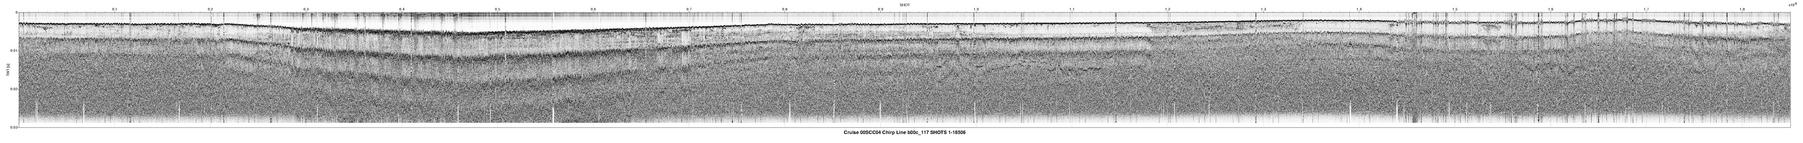 00SCC04 b00c_117 seismic profile image